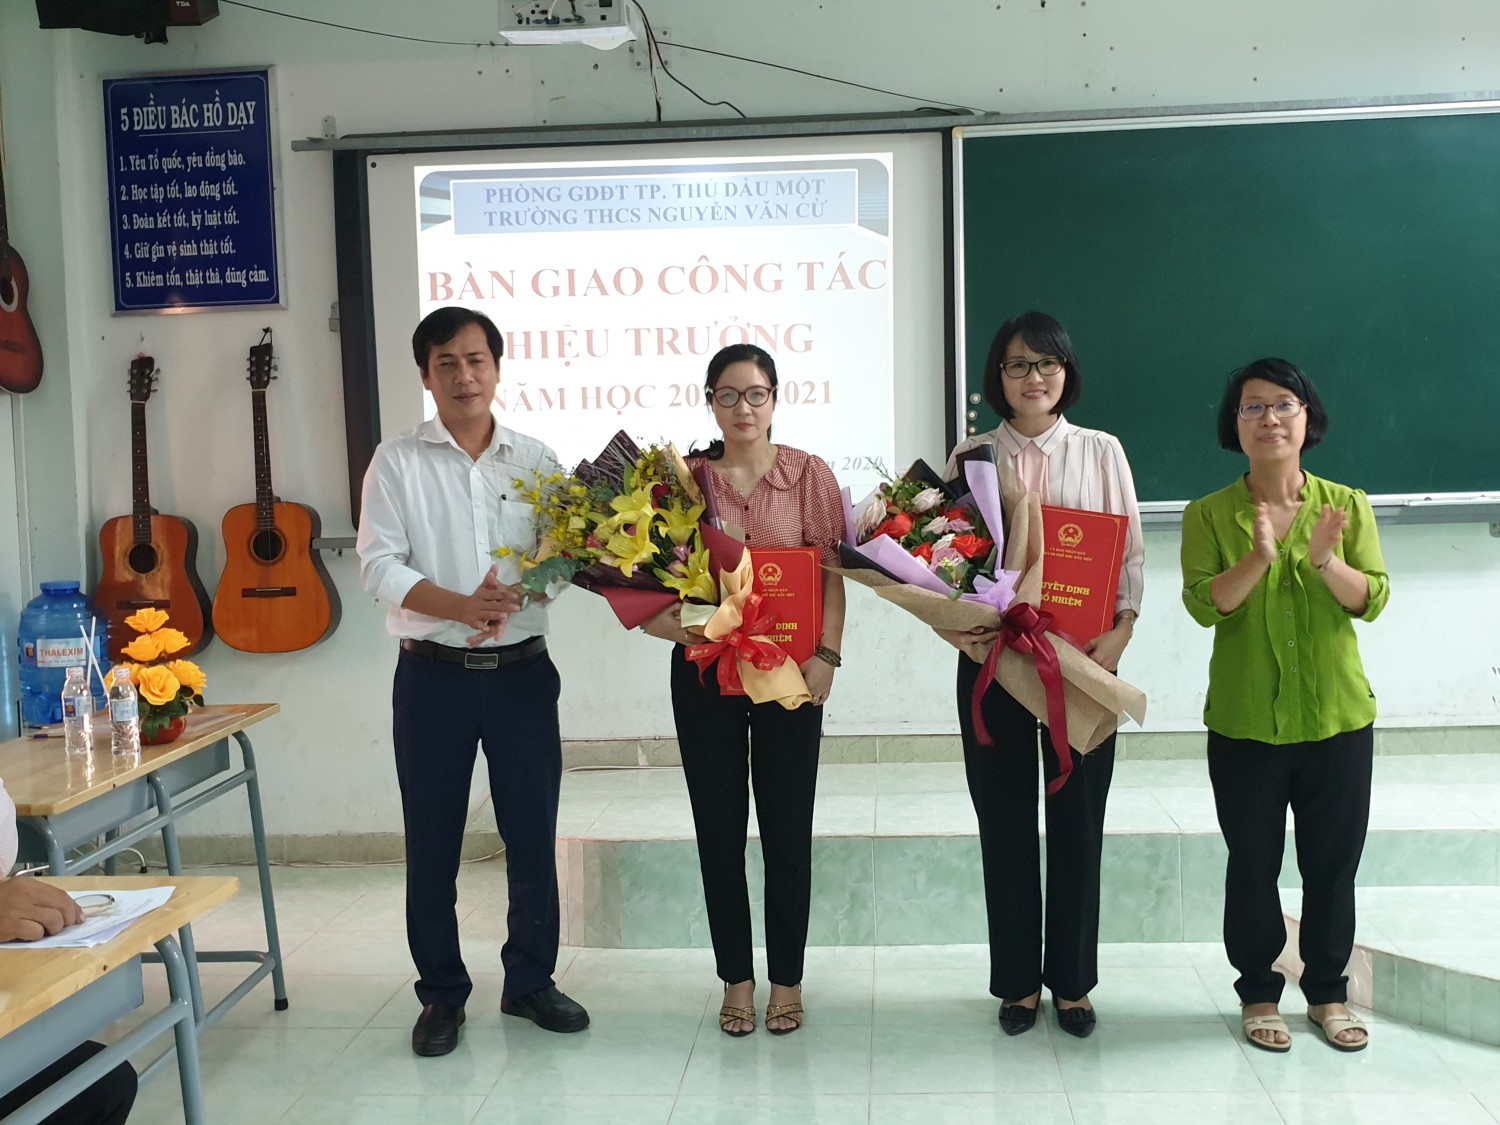 Bàn giao công tác Hiệu trưởng, bổ nhiệm HT, PHT trường THCS Nguyễn Văn Cừ